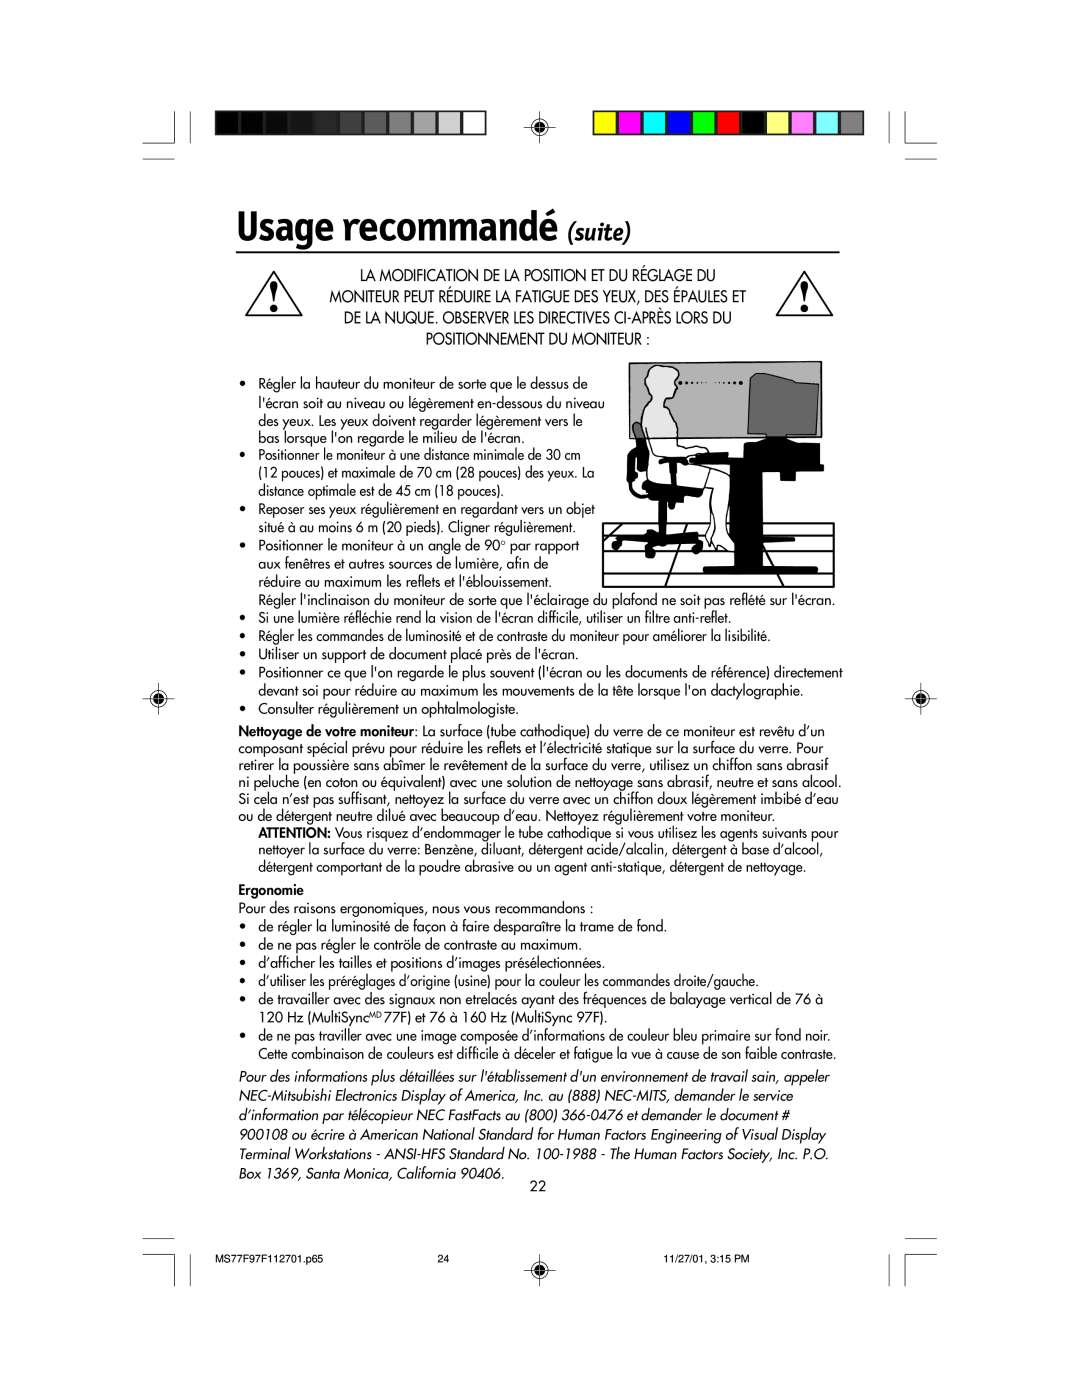 NEC 97F, 77F manual Usage recommandé suite, La Modification De La Position Et Du Réglage Du, Positionnement Du Moniteur 